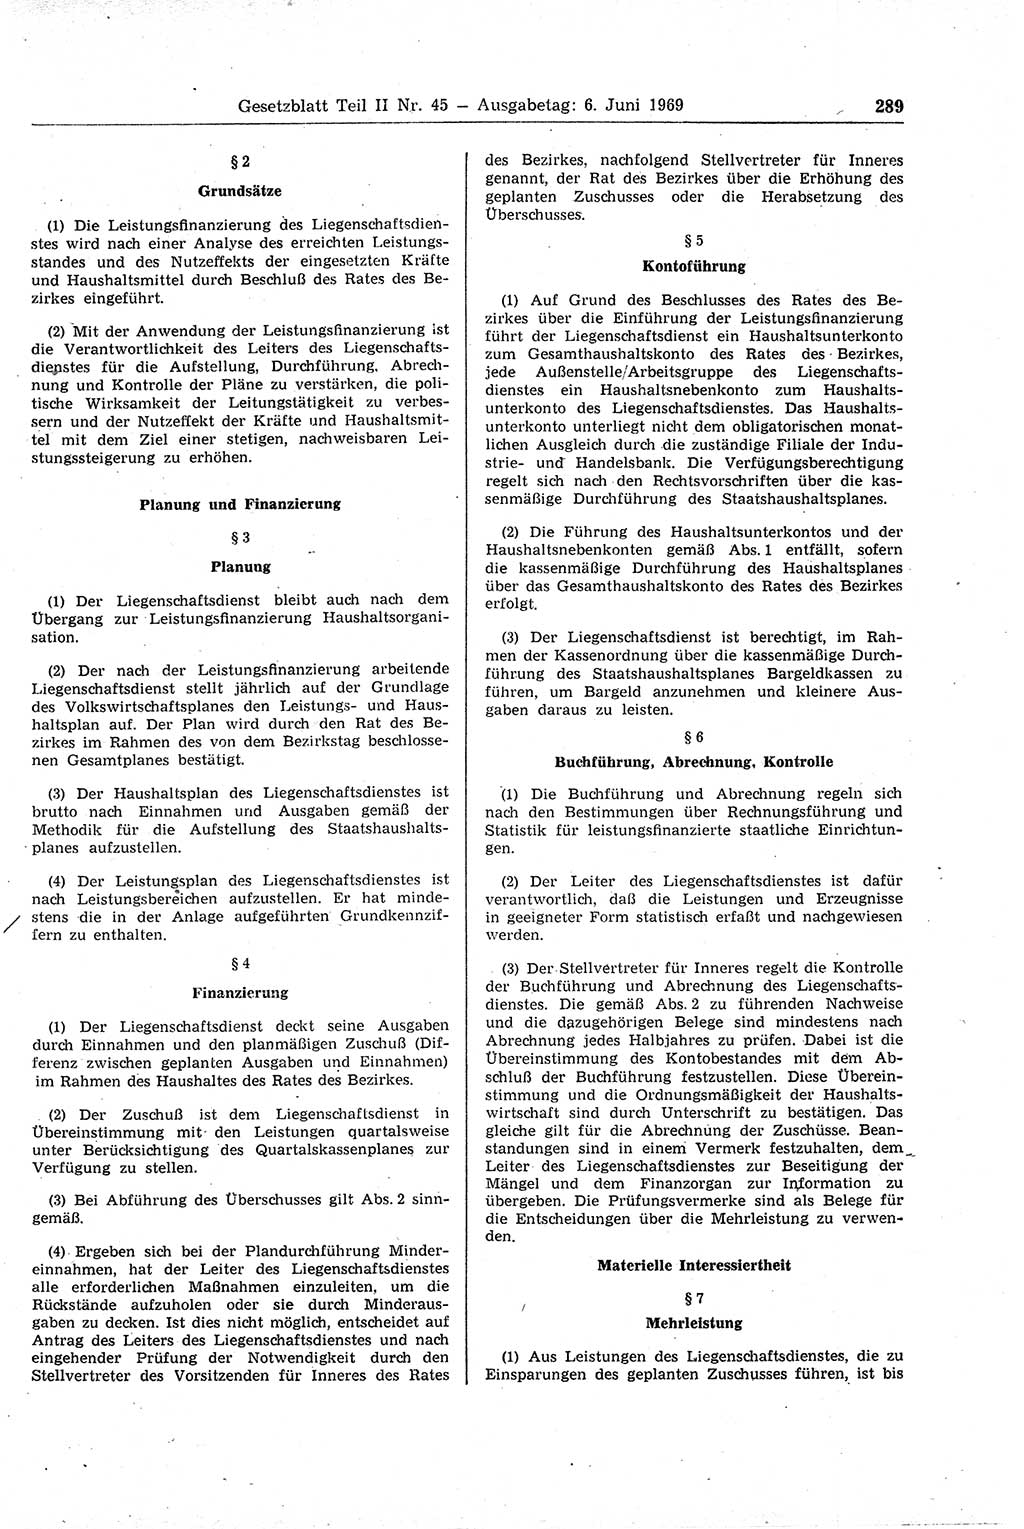 Gesetzblatt (GBl.) der Deutschen Demokratischen Republik (DDR) Teil ⅠⅠ 1969, Seite 289 (GBl. DDR ⅠⅠ 1969, S. 289)